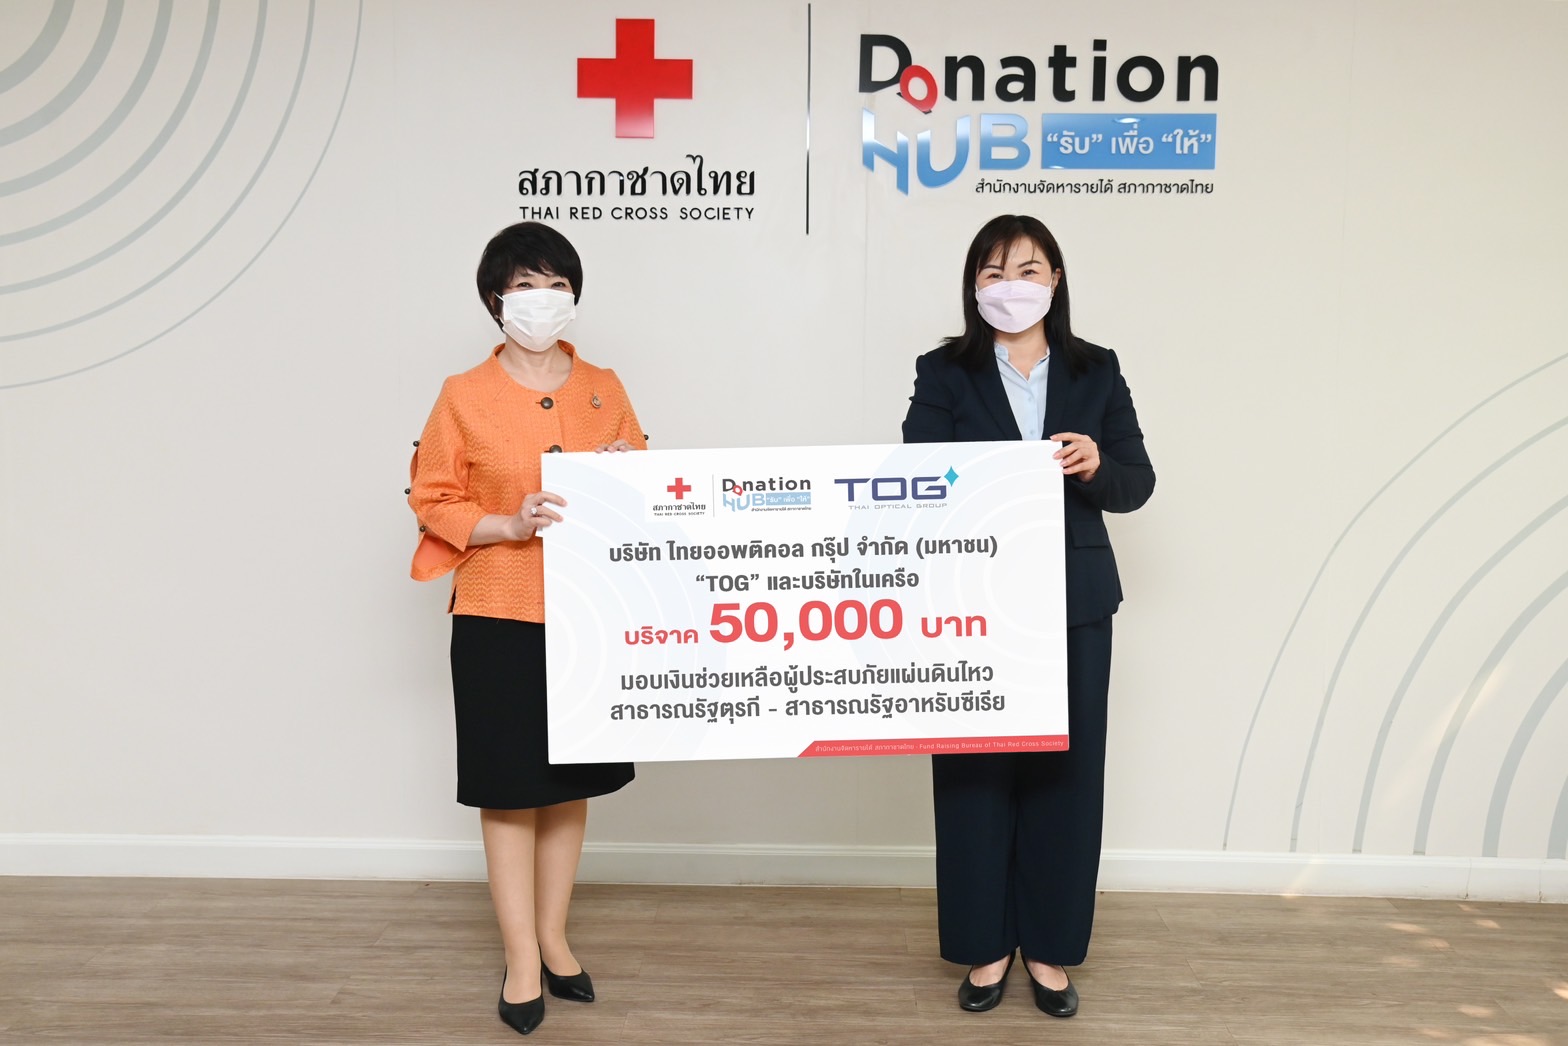 TOG ร่วมสนับสนุนเงินช่วยเหลือผู้ประสบภัยจากเหตุการณ์แผ่นดินไหวในตุรกีและซีเรีย